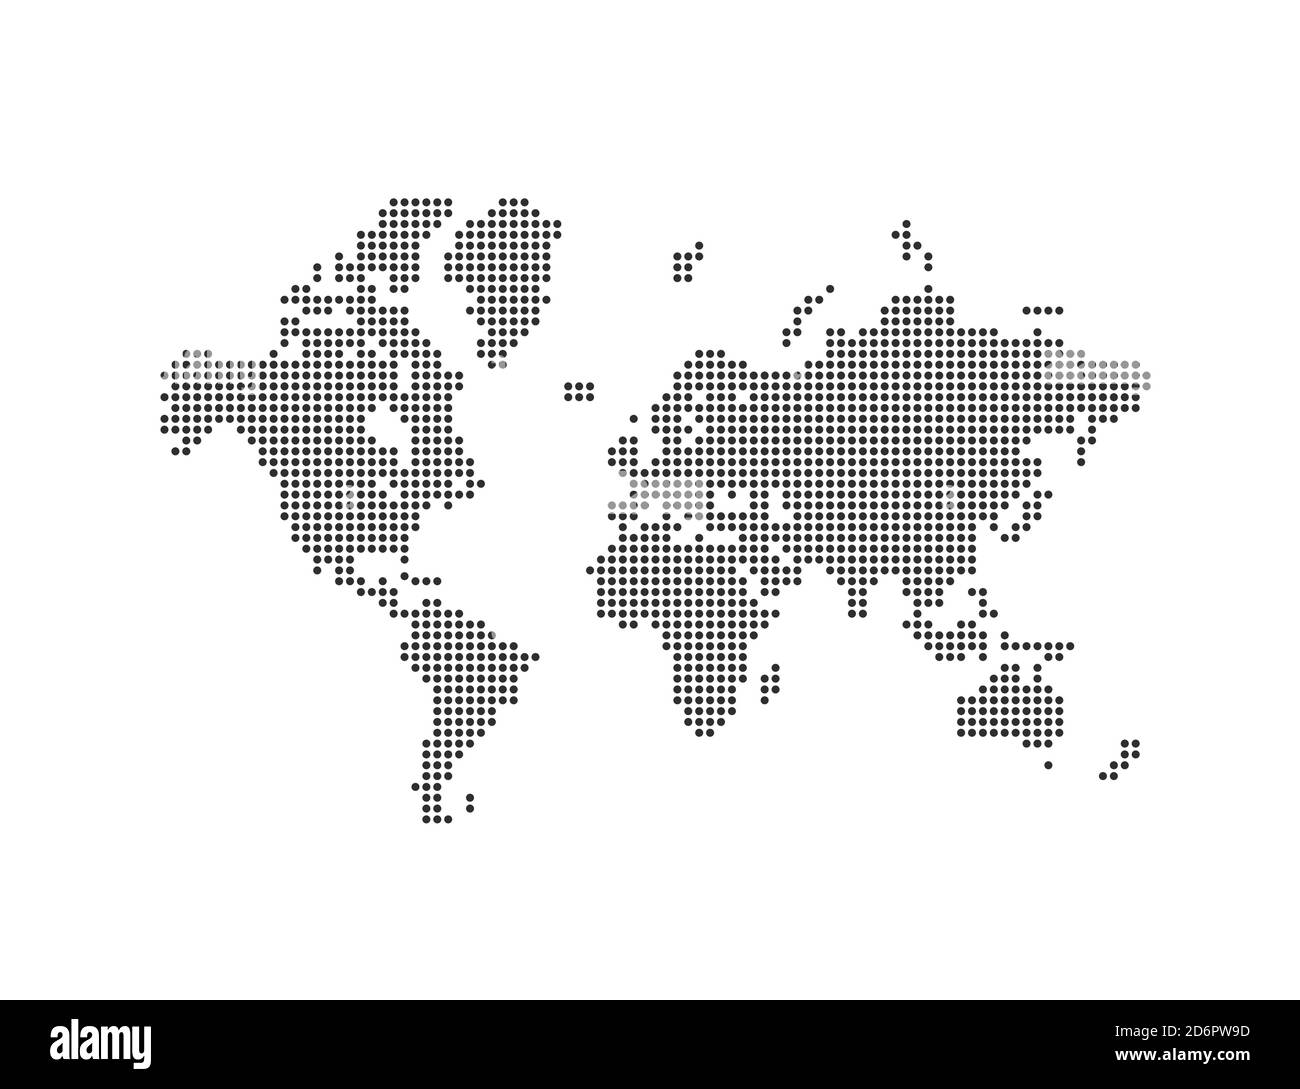 Welt, gepunktete Karte auf weißem Hintergrund. Vektorgrafik. Stock Vektor